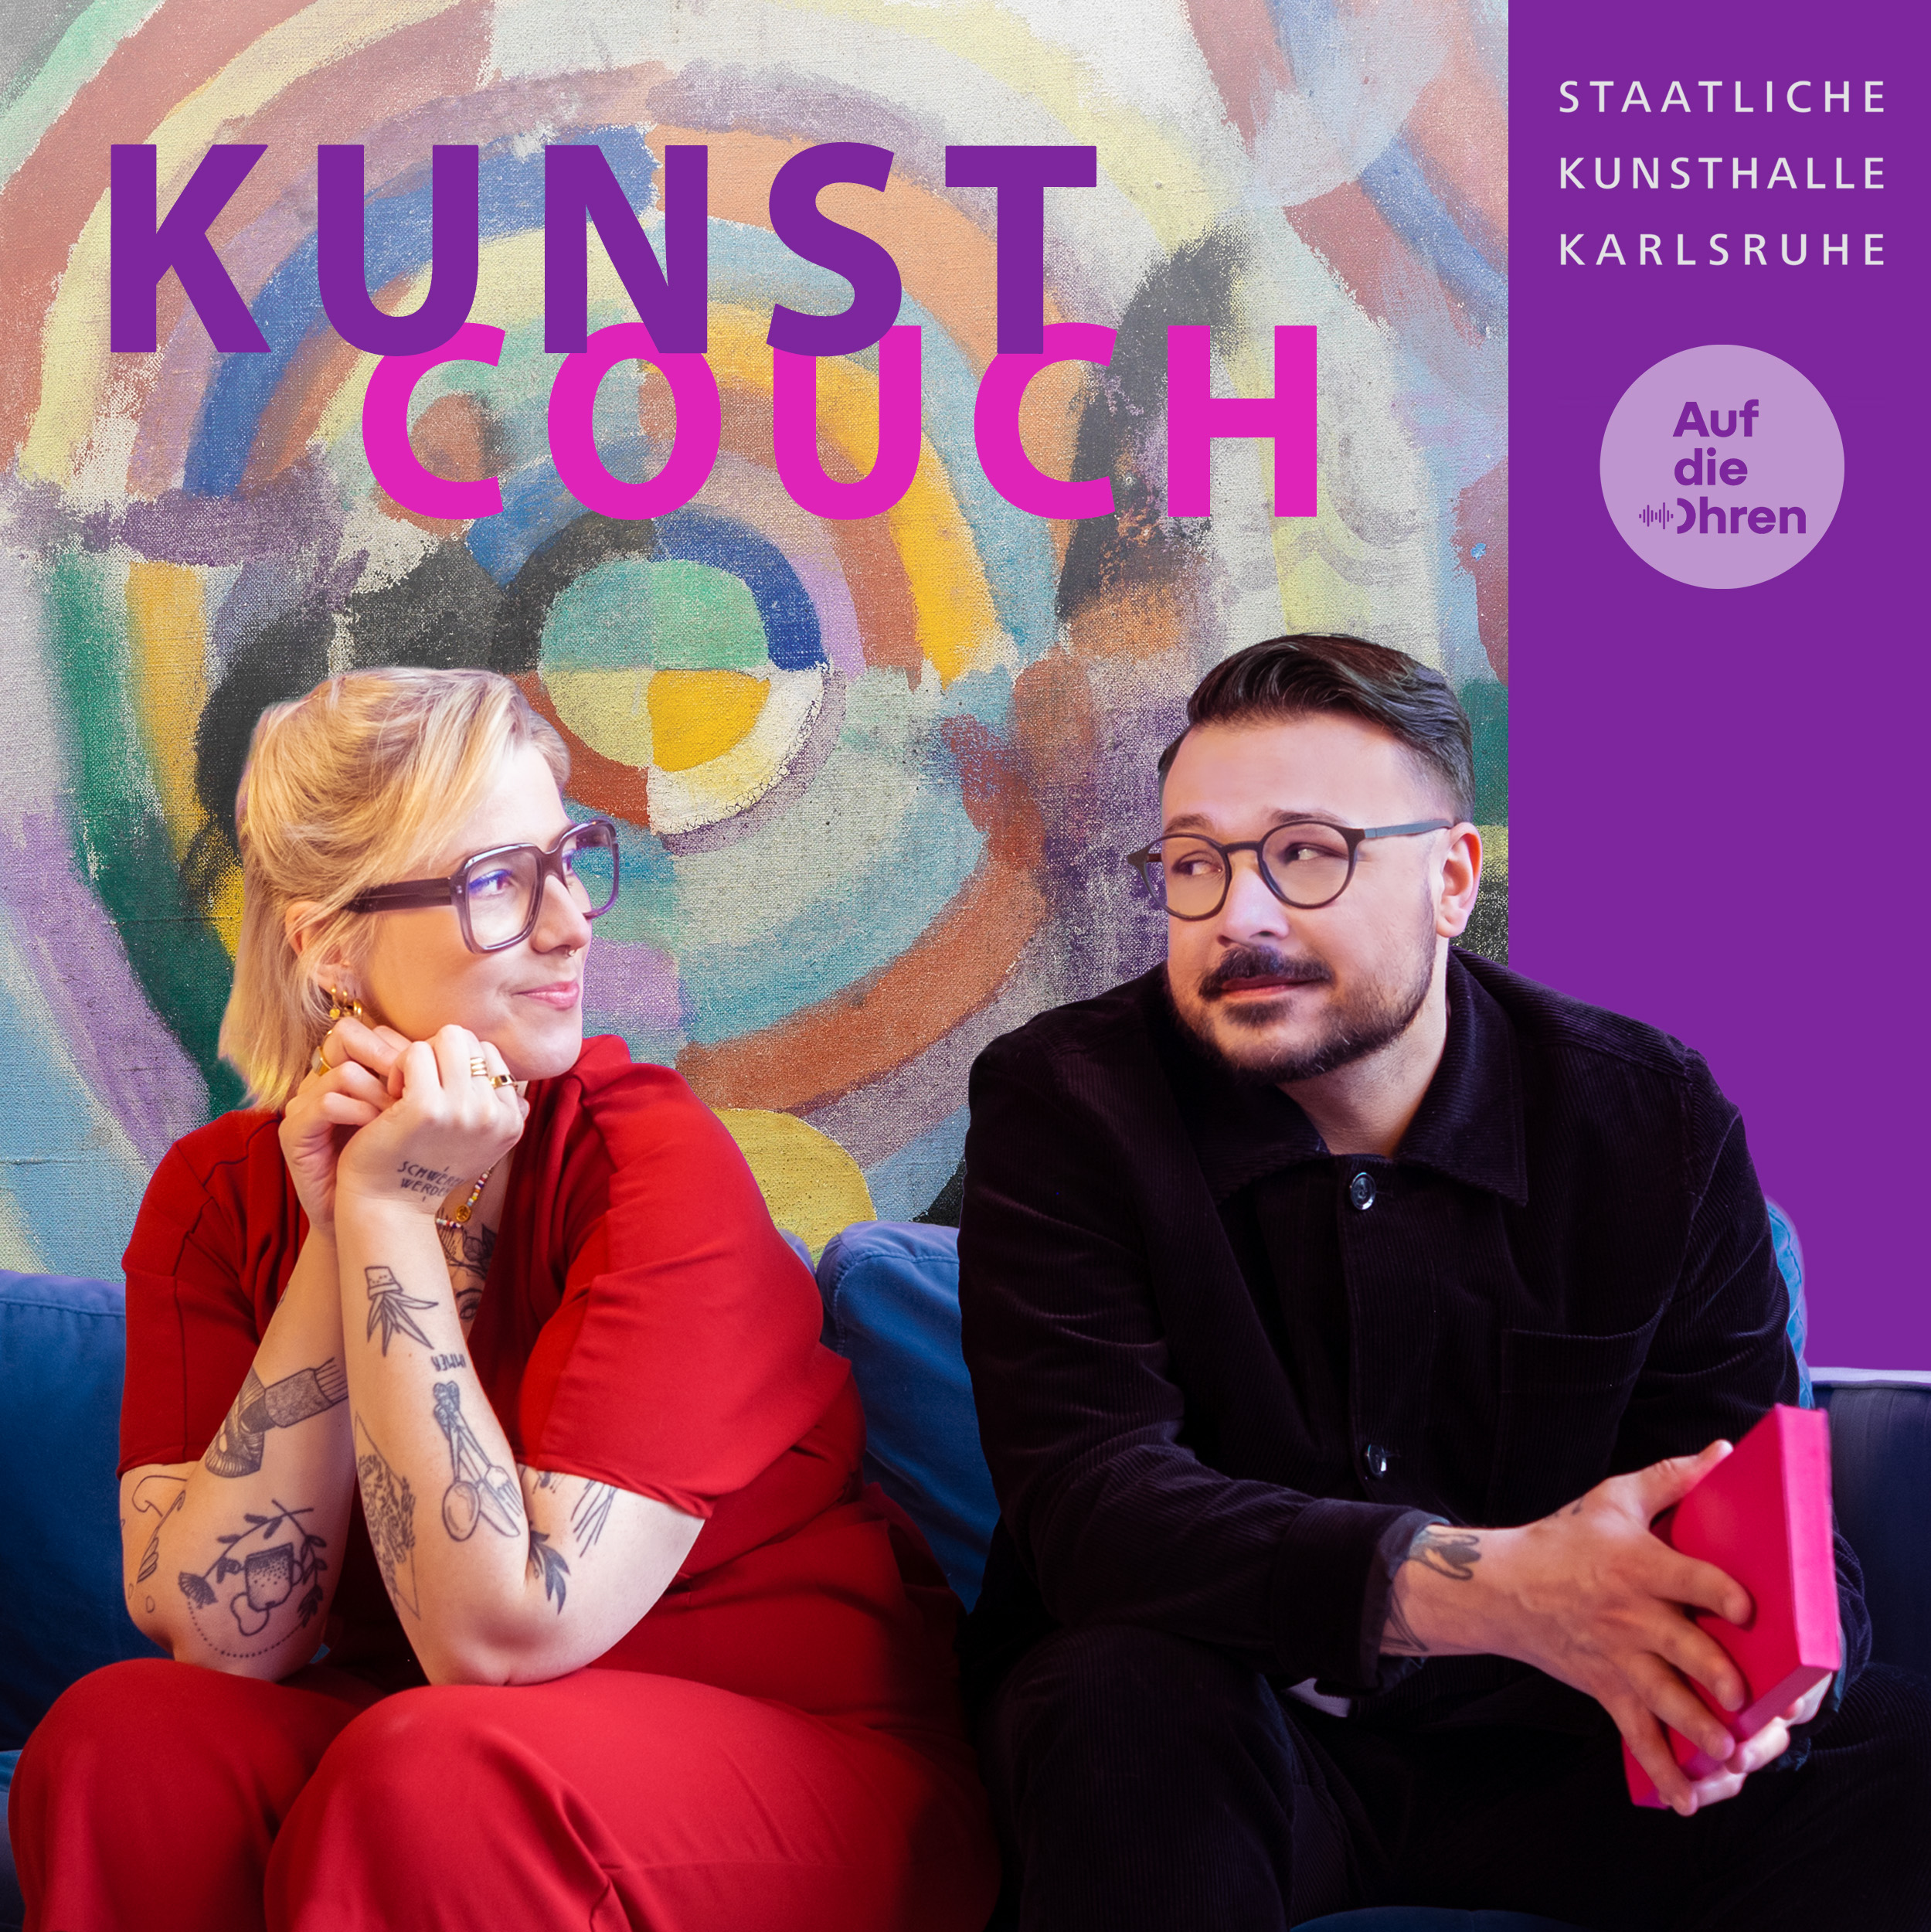 Logo des Kunsthallen-Podcasts Kunstcouch, auf dem der Schriftzug Kunstcouch zu lesen ist. Darunter sitzen die Hosts Umut Özdemir und Jaqueline Scheiber, im Hintergrund das Gemälde Verbrechen aus Leidenschaft von Robert Delaunay.